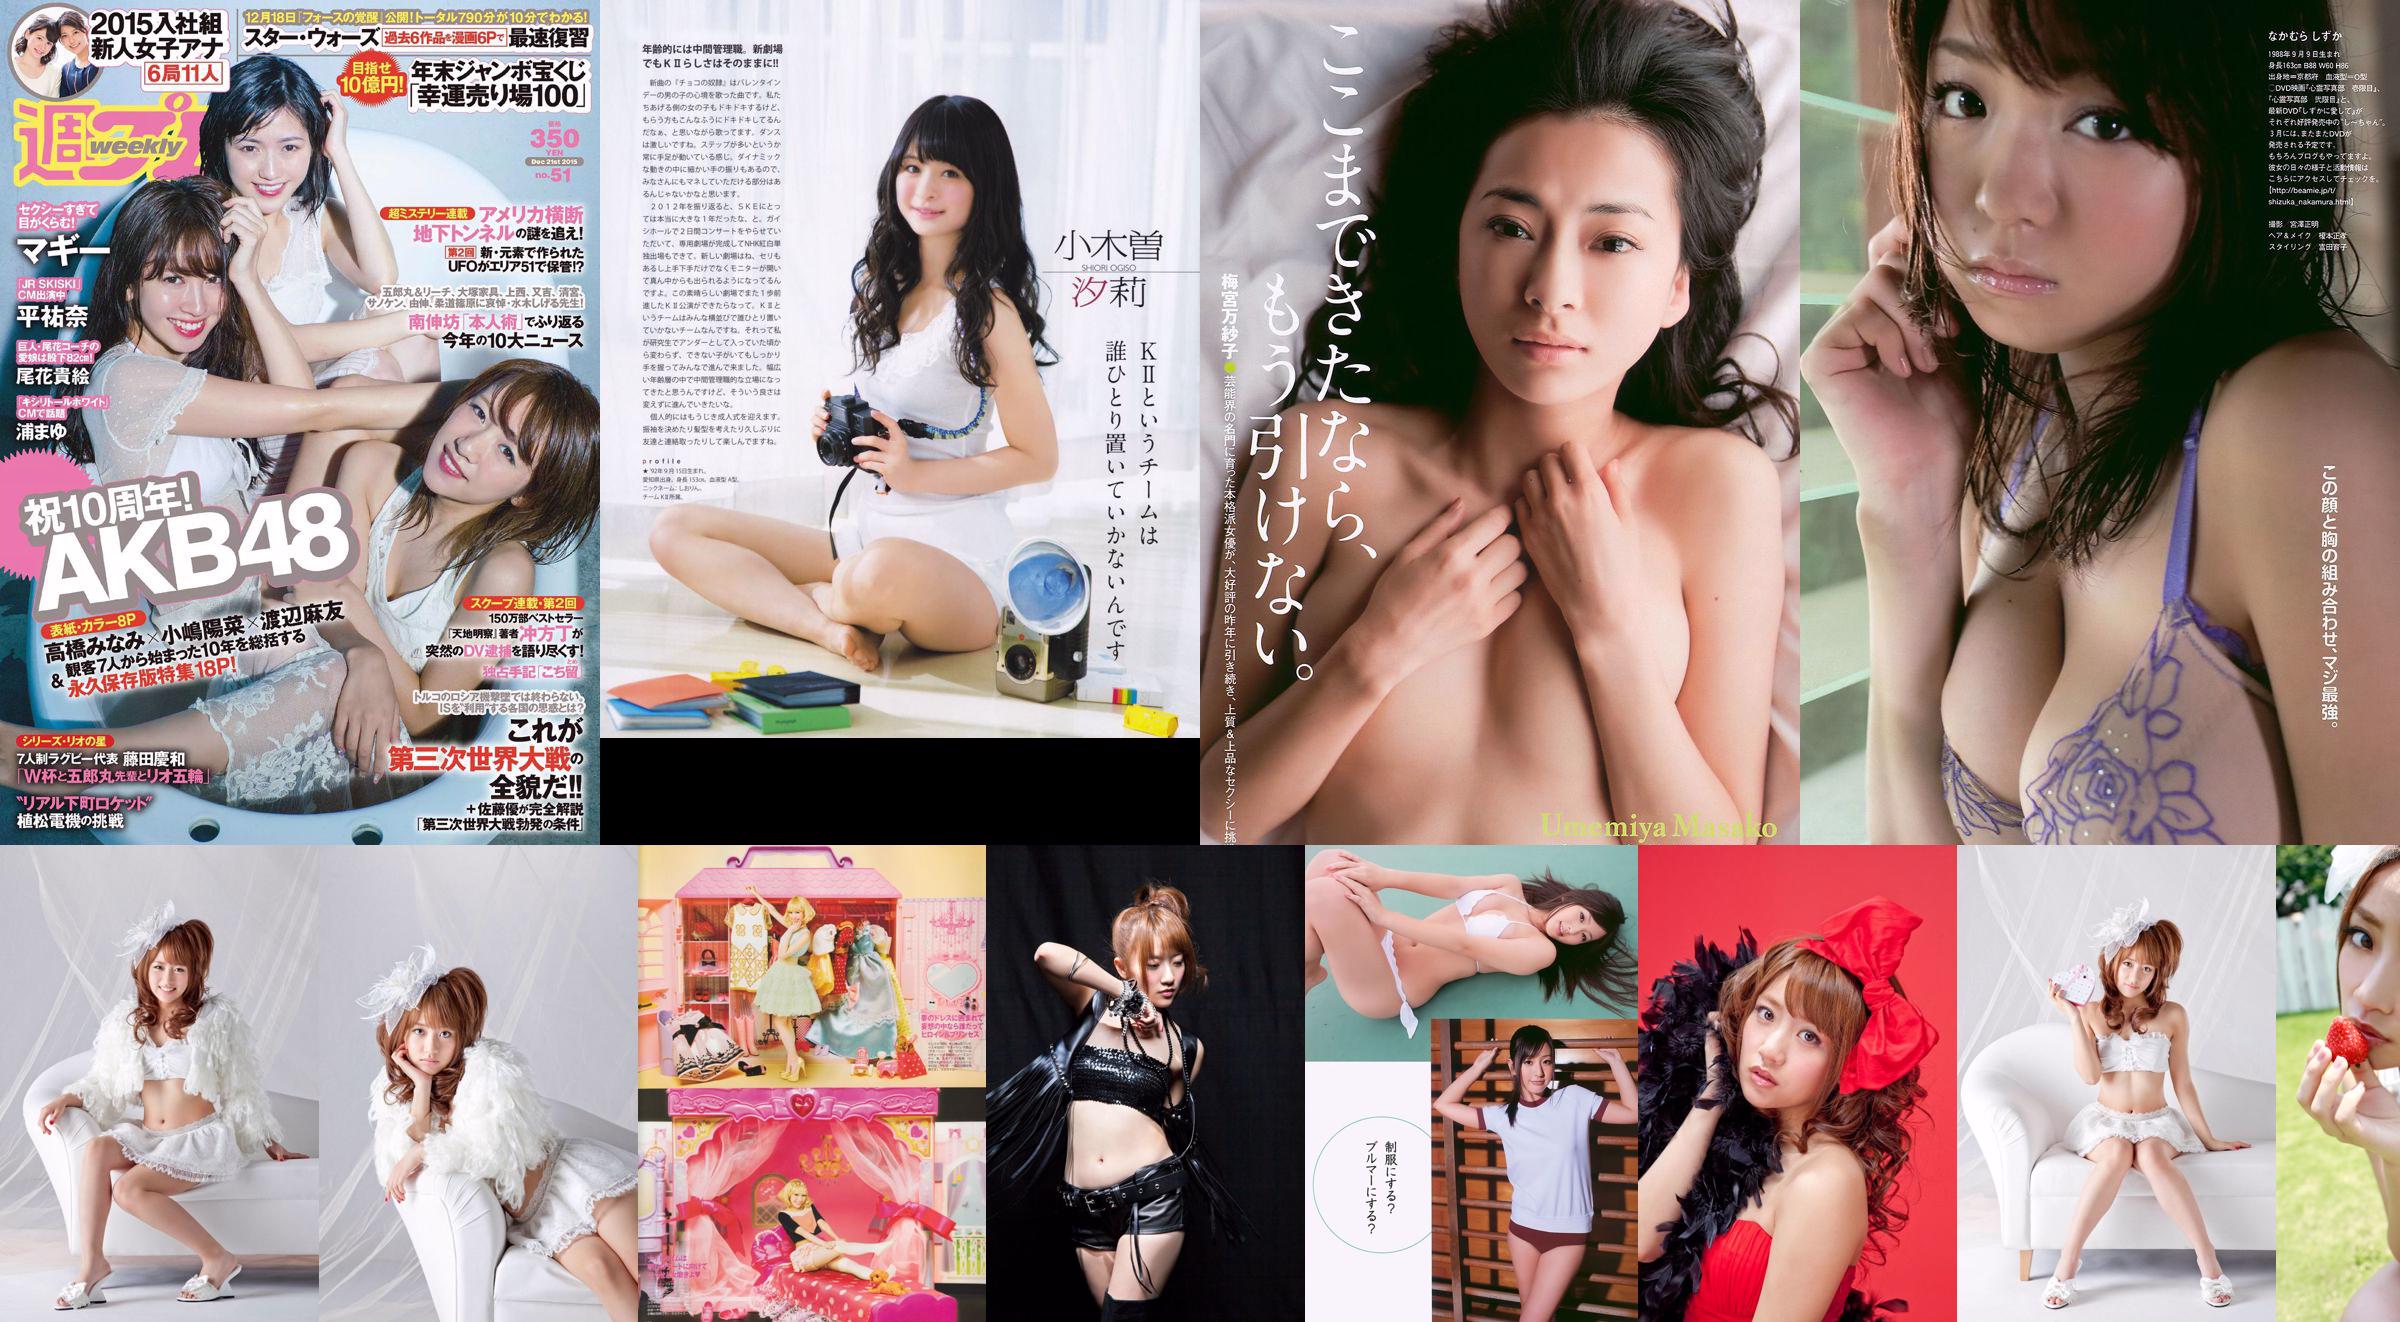 Minami Takahashi Haruna Kojima Mayu Watanabe Maggie Takae Obana Yuna Taira Mayu Ura Mitadera En [Wekelijkse Playboy] 2015 No.51 Foto No.041fba Pagina 1